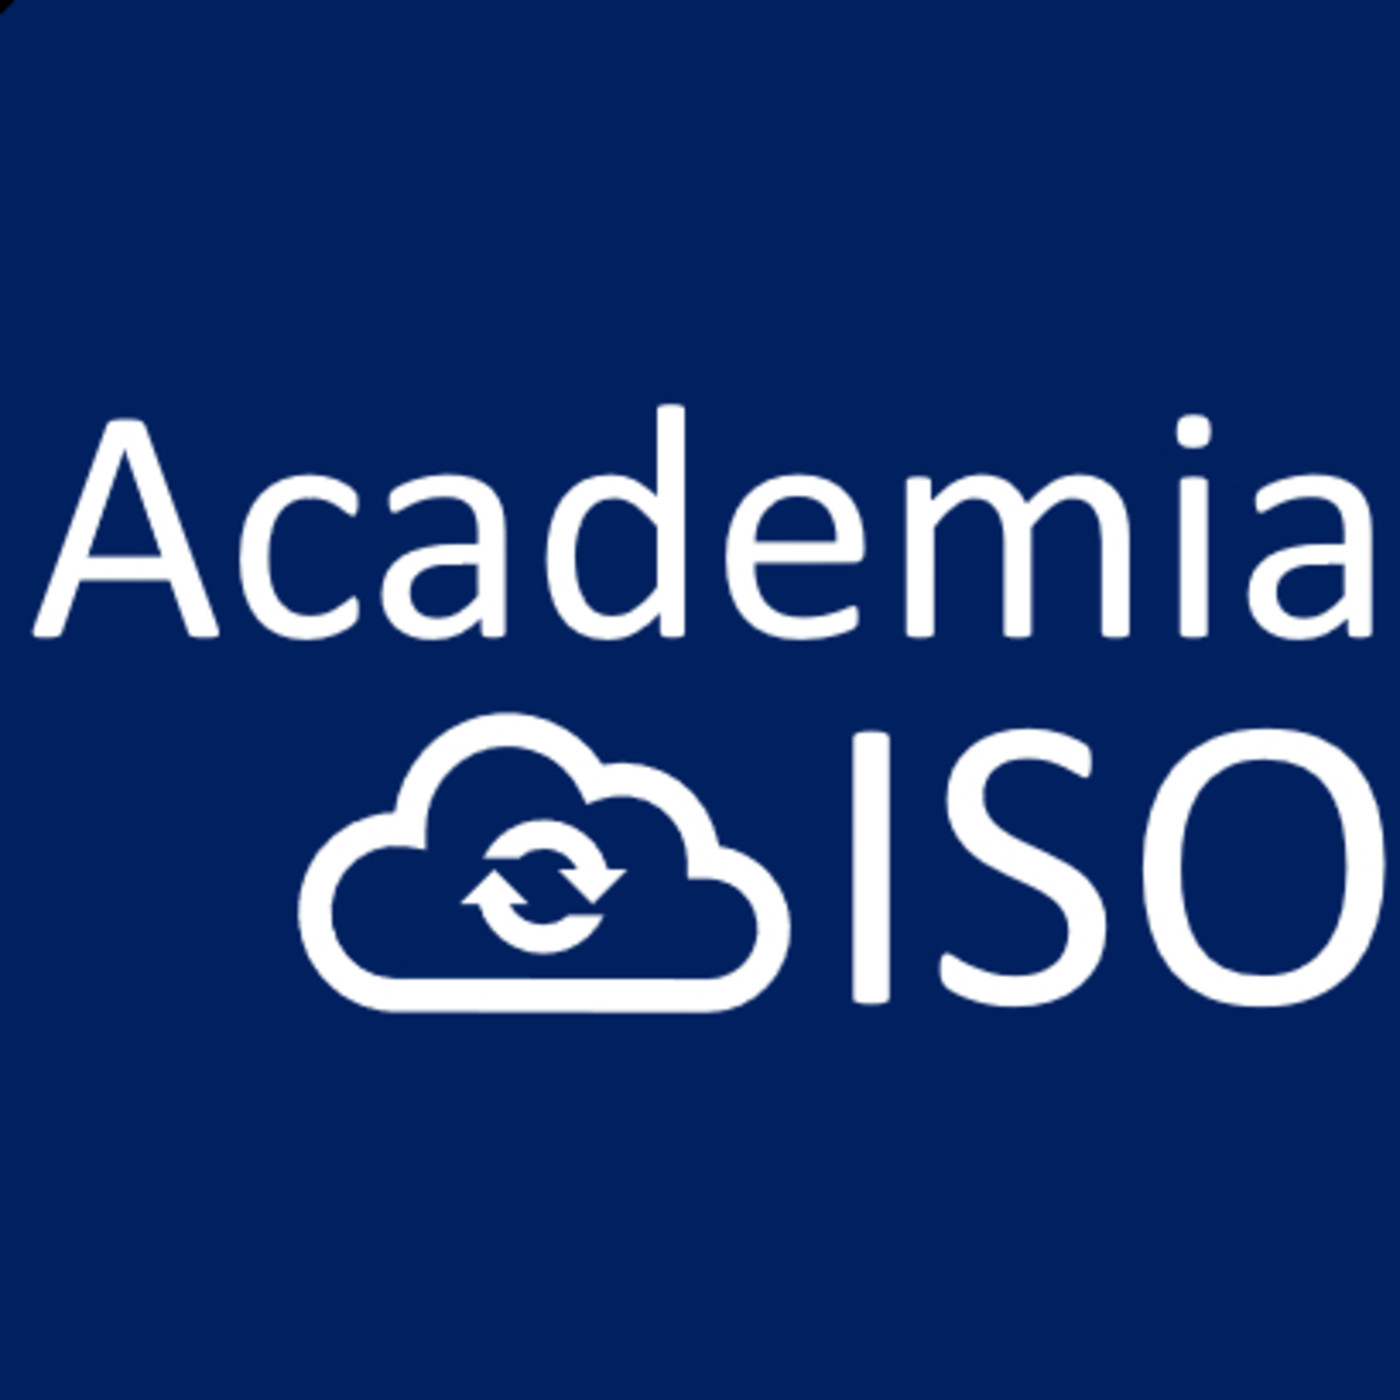 ISO 9001 versión 2015 Sistema de gestión de calidad ISO 9001 Sistema de calidad y sus procesos